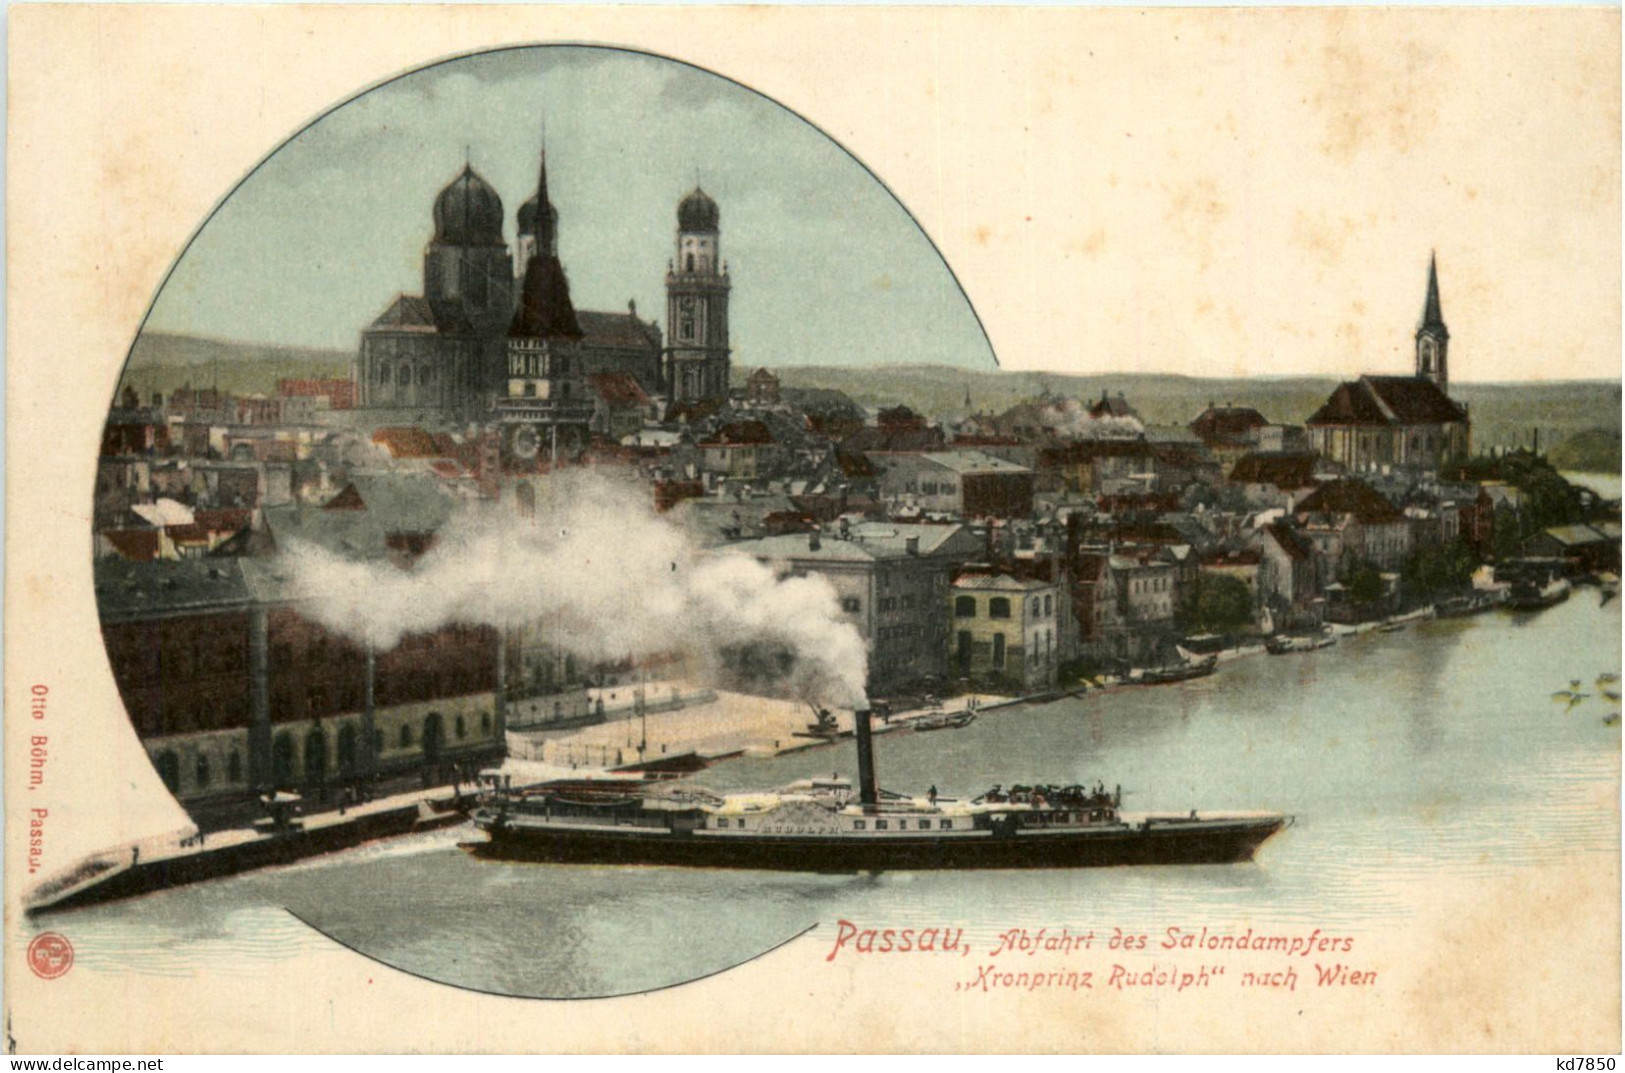 Passau - Abfahrt Des Salondampfers Kronprinz Rudolph - Passau